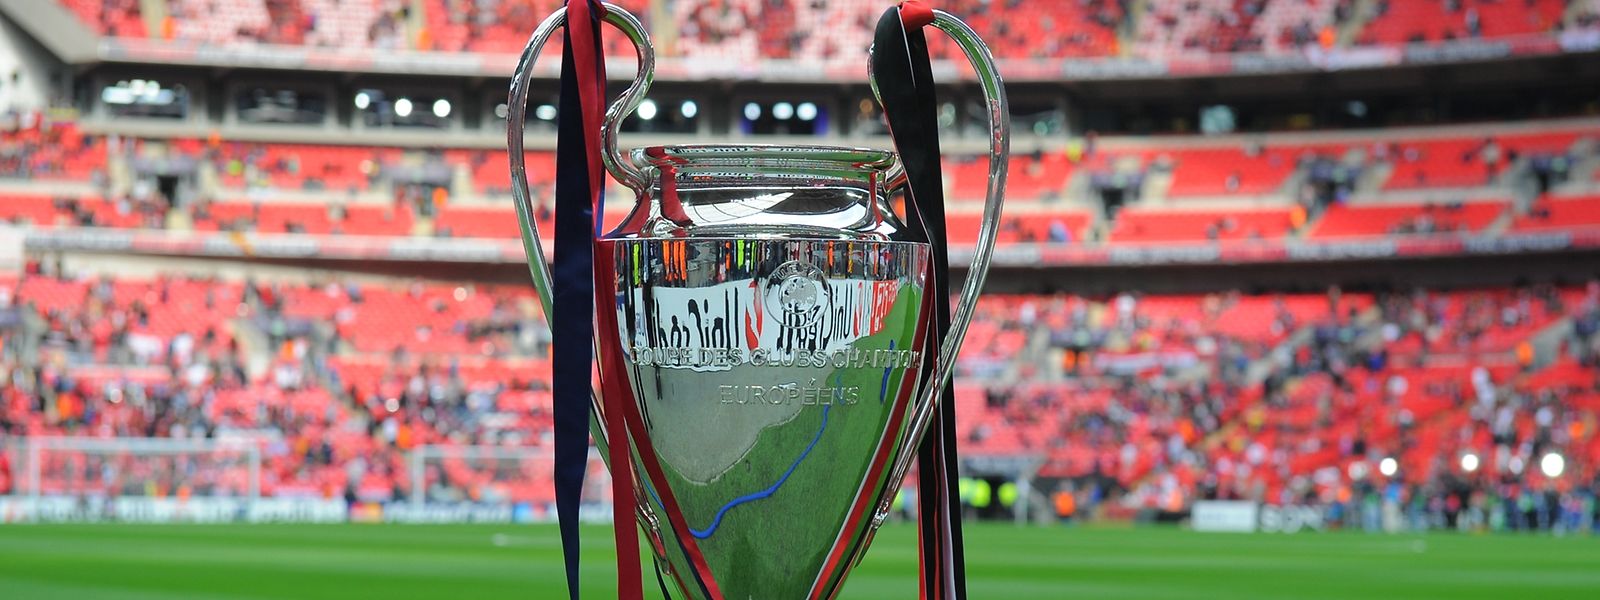 la finale 2019 de l'Europa League se jouera le mercredi 29 mai 2019, trois jours avant la finale de la Ligue des champions prévue le samedi 1er juin 2019